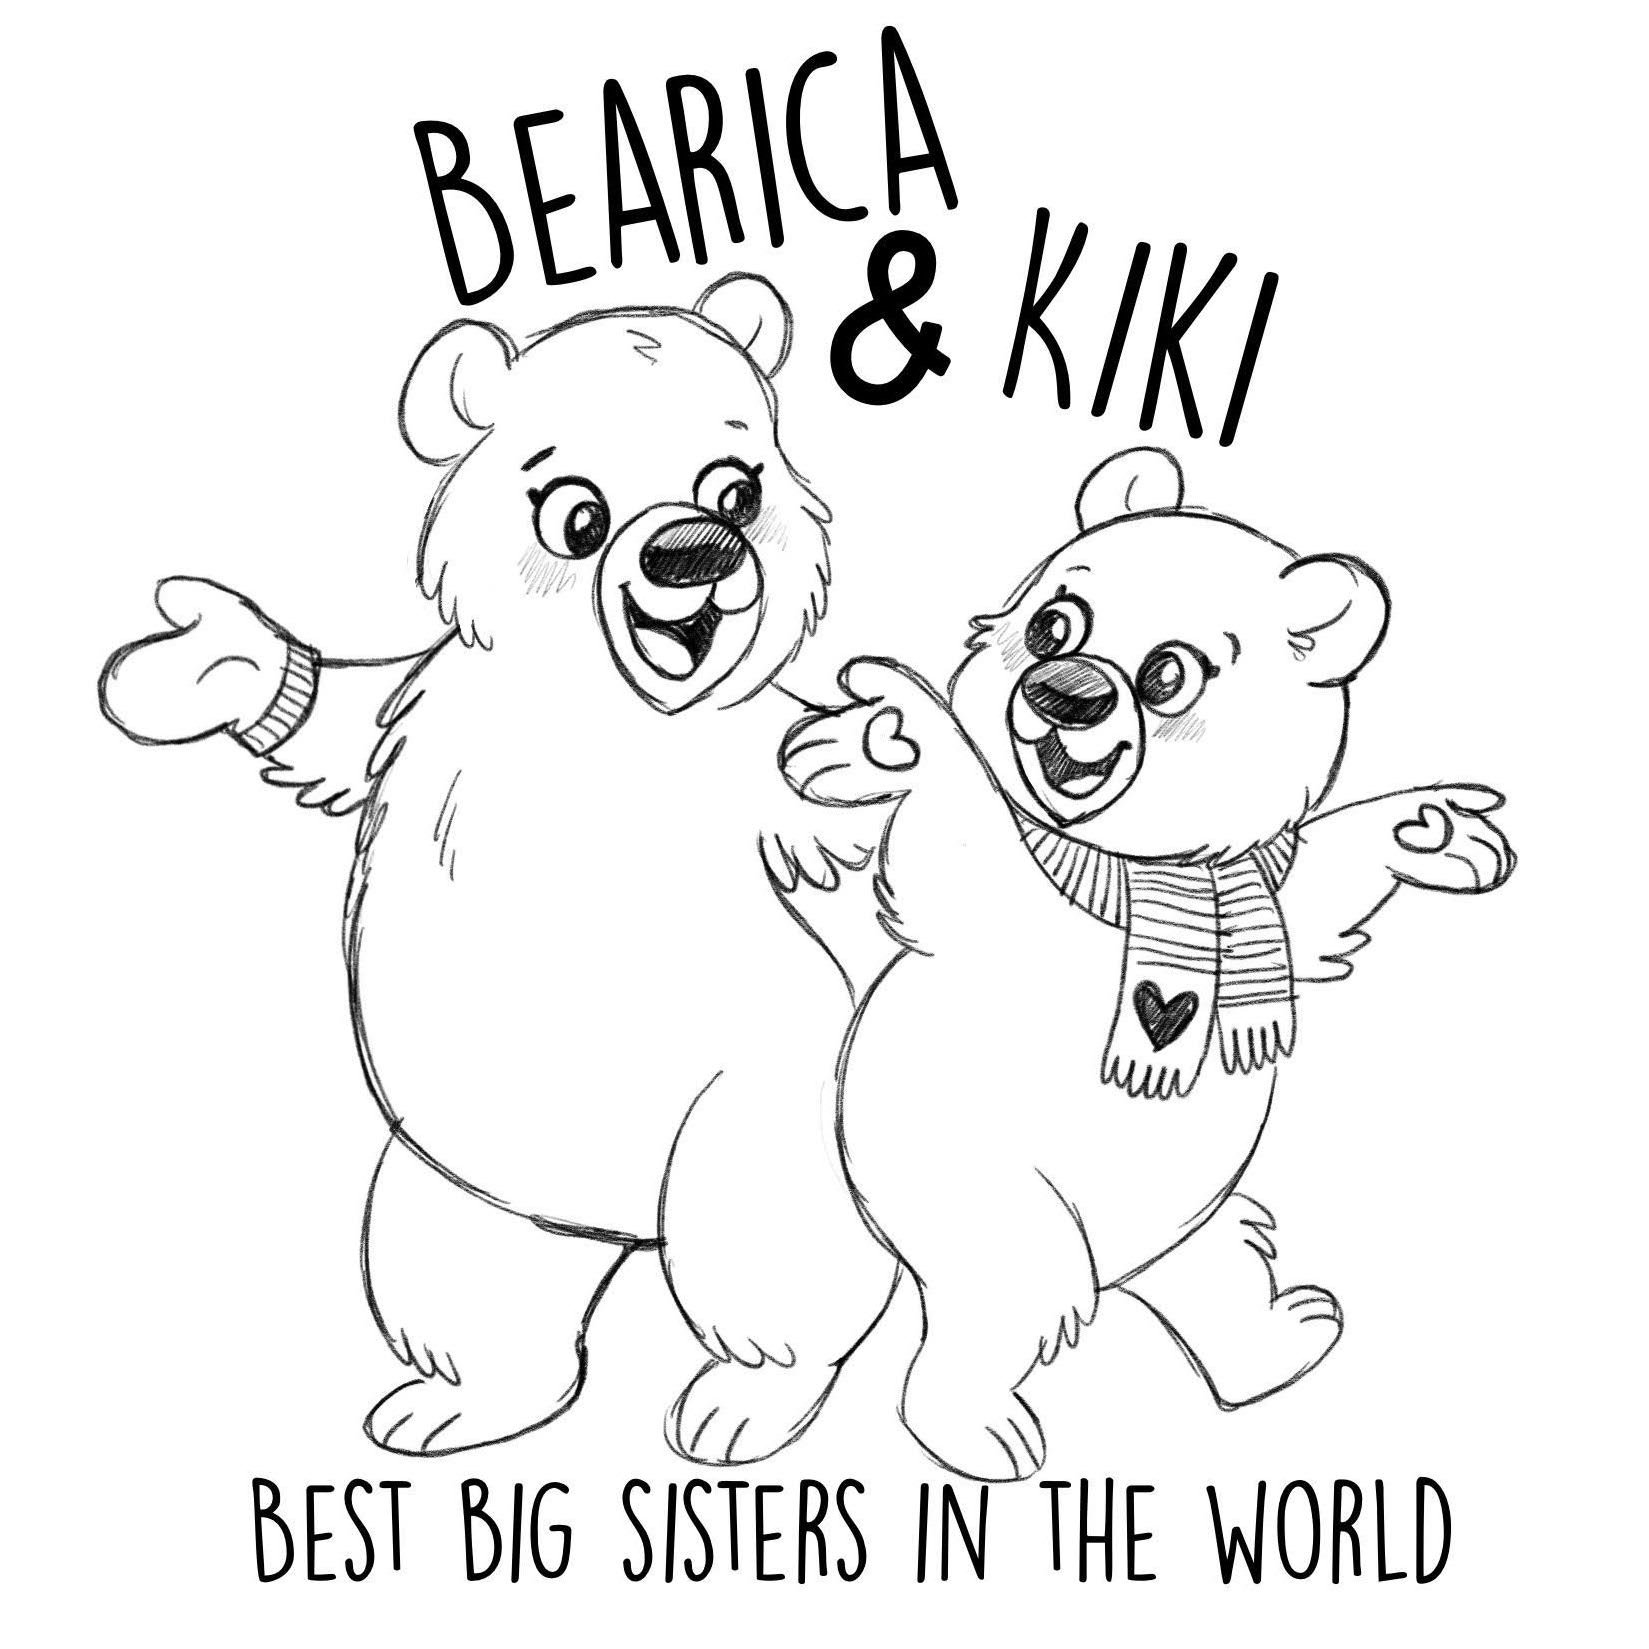 Bearica & Kiki.jpeg